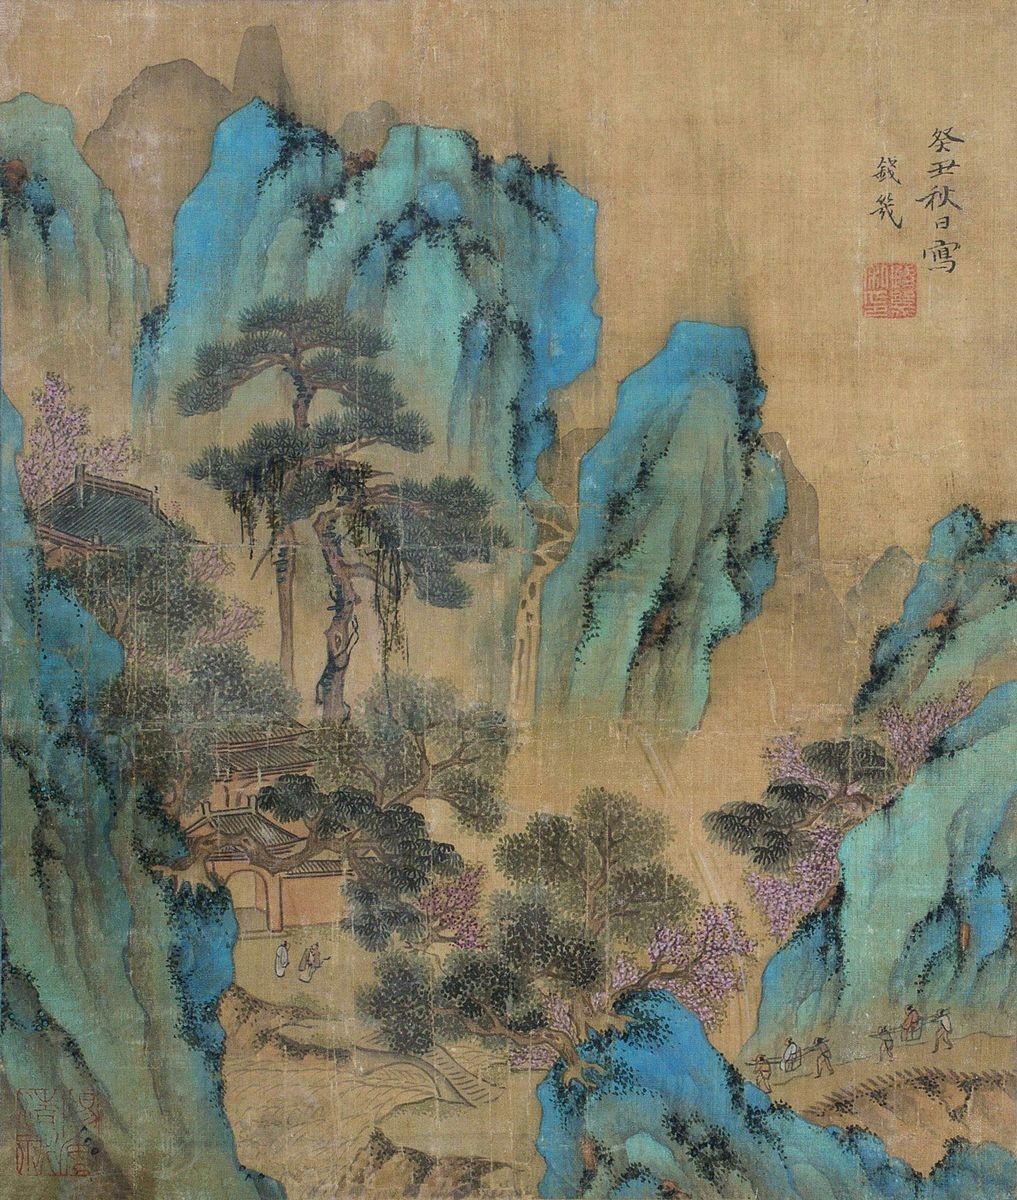 文化 正文  浅绛山水画:中国山水画中的一种没色技巧.